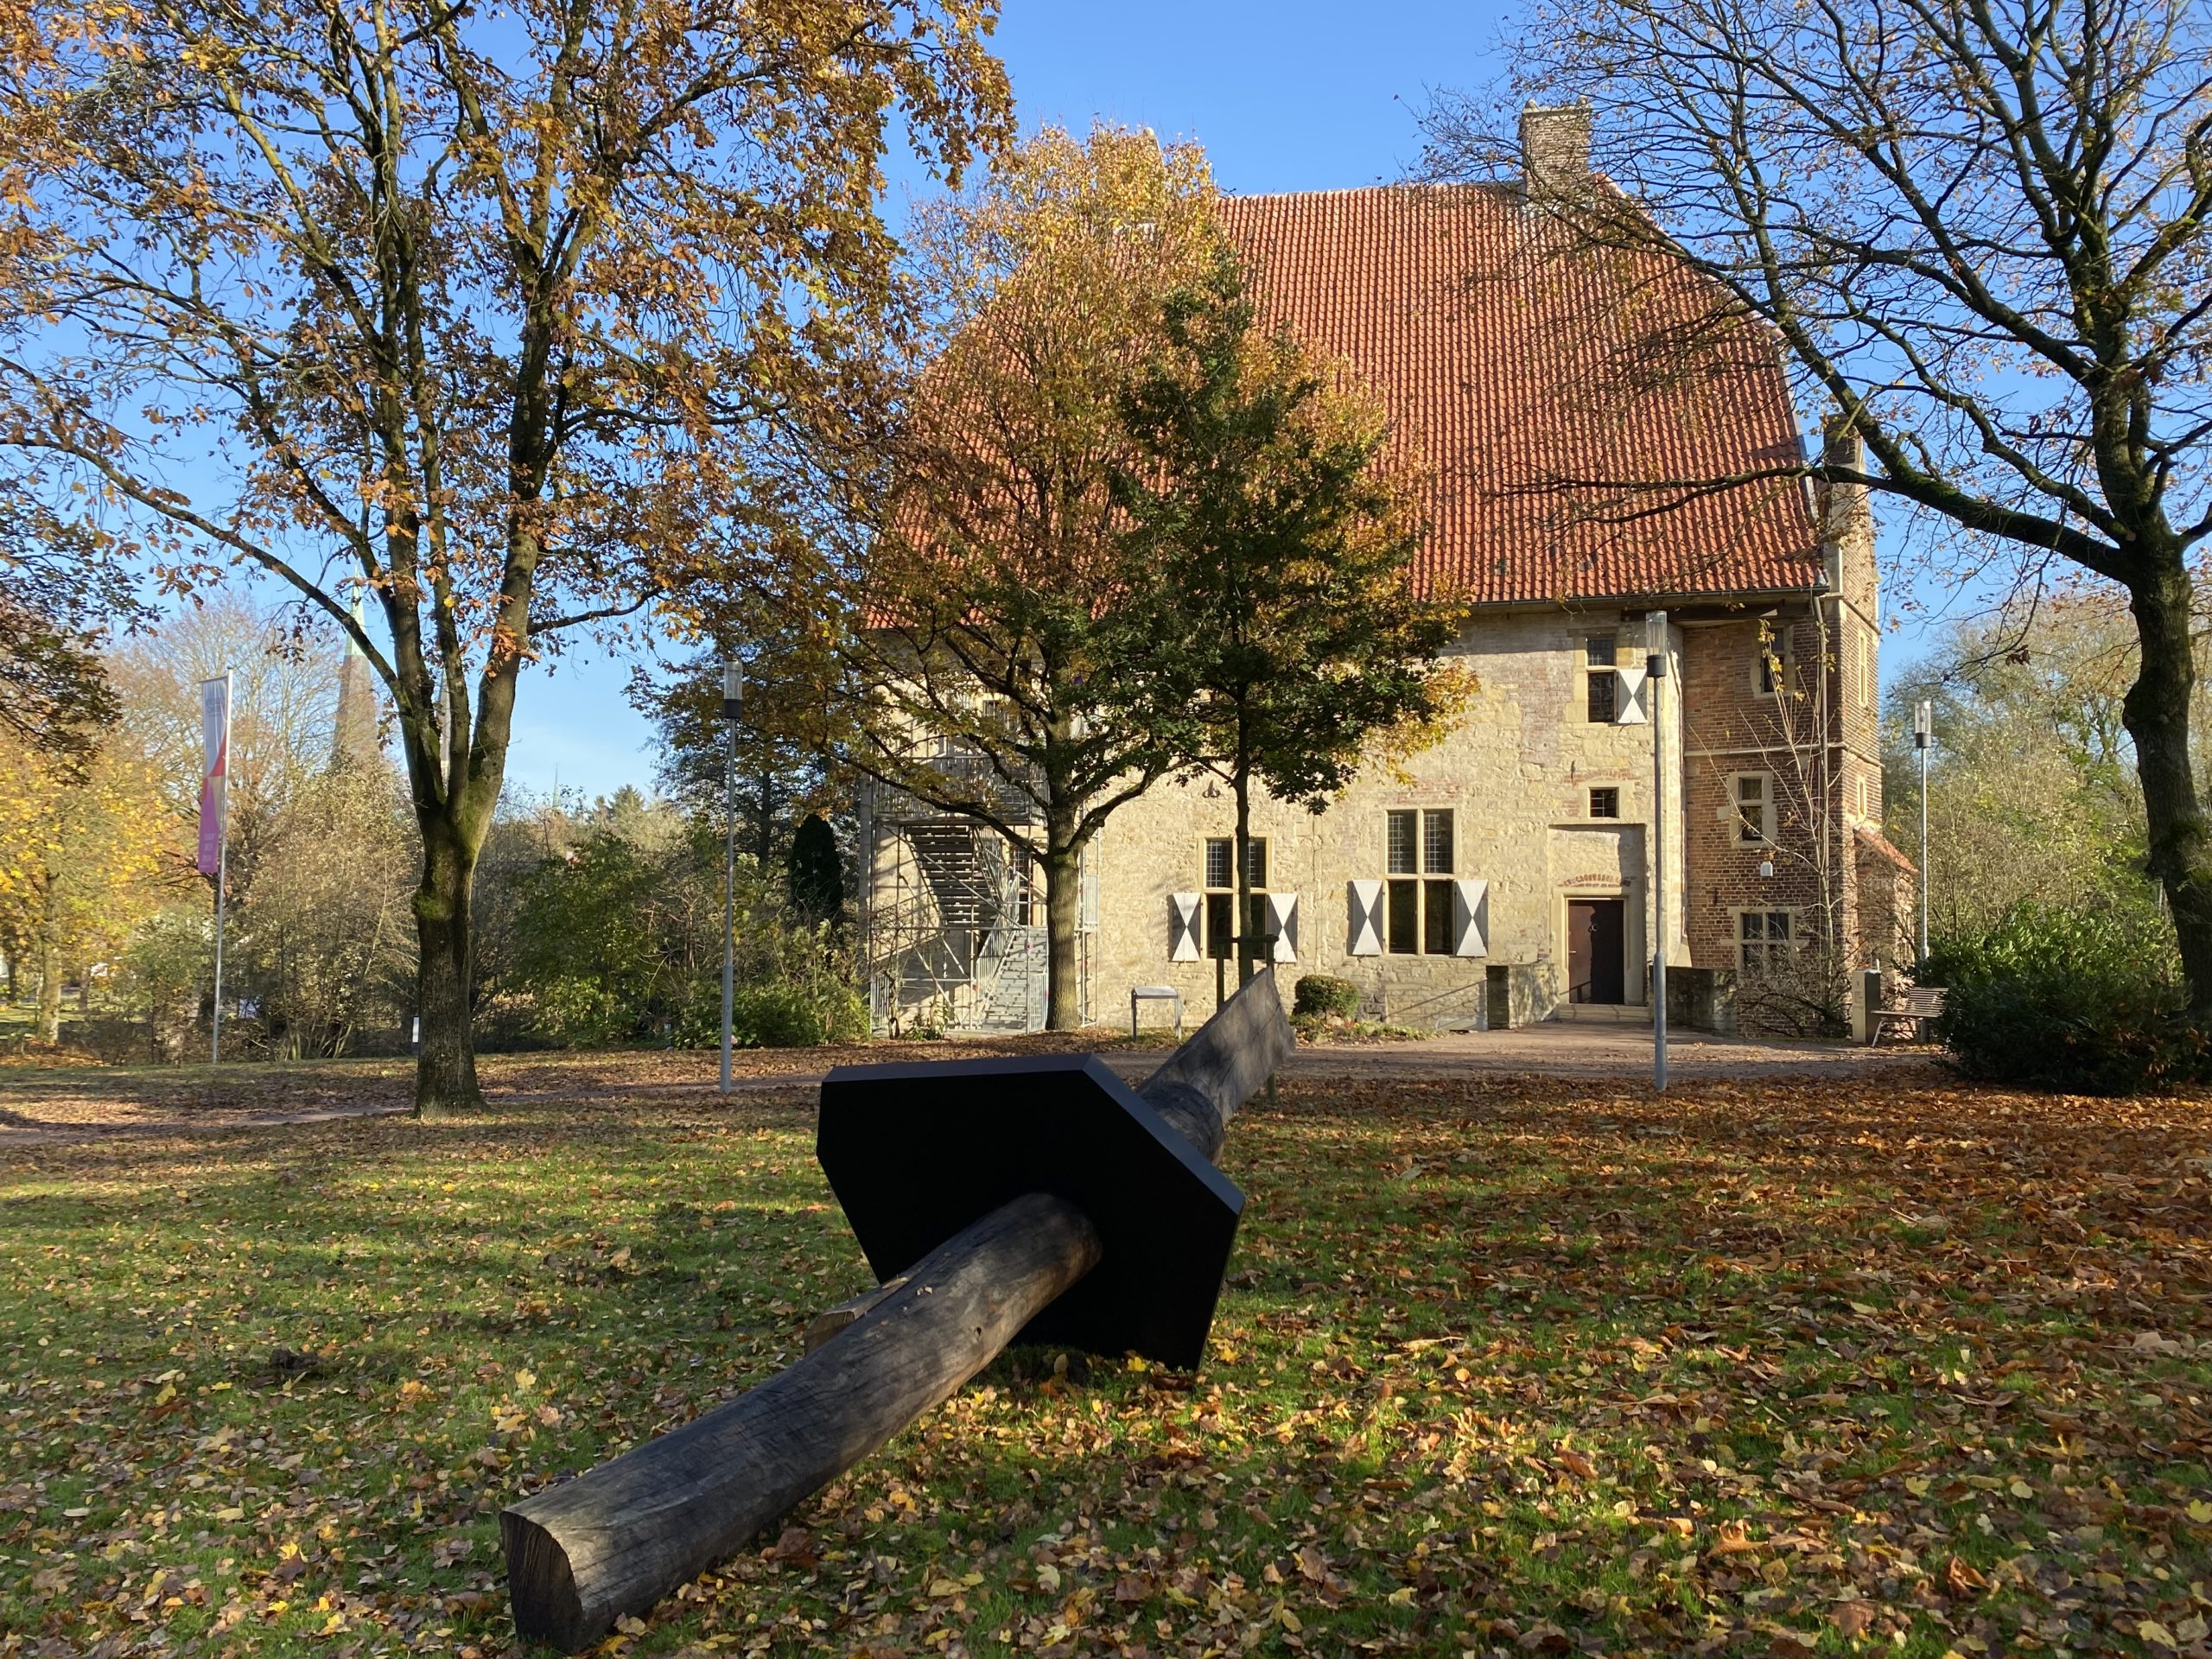 Holzskulptur "One Plate" auf der Wiese vor der historischen Kolvenburg und blauem Himmel